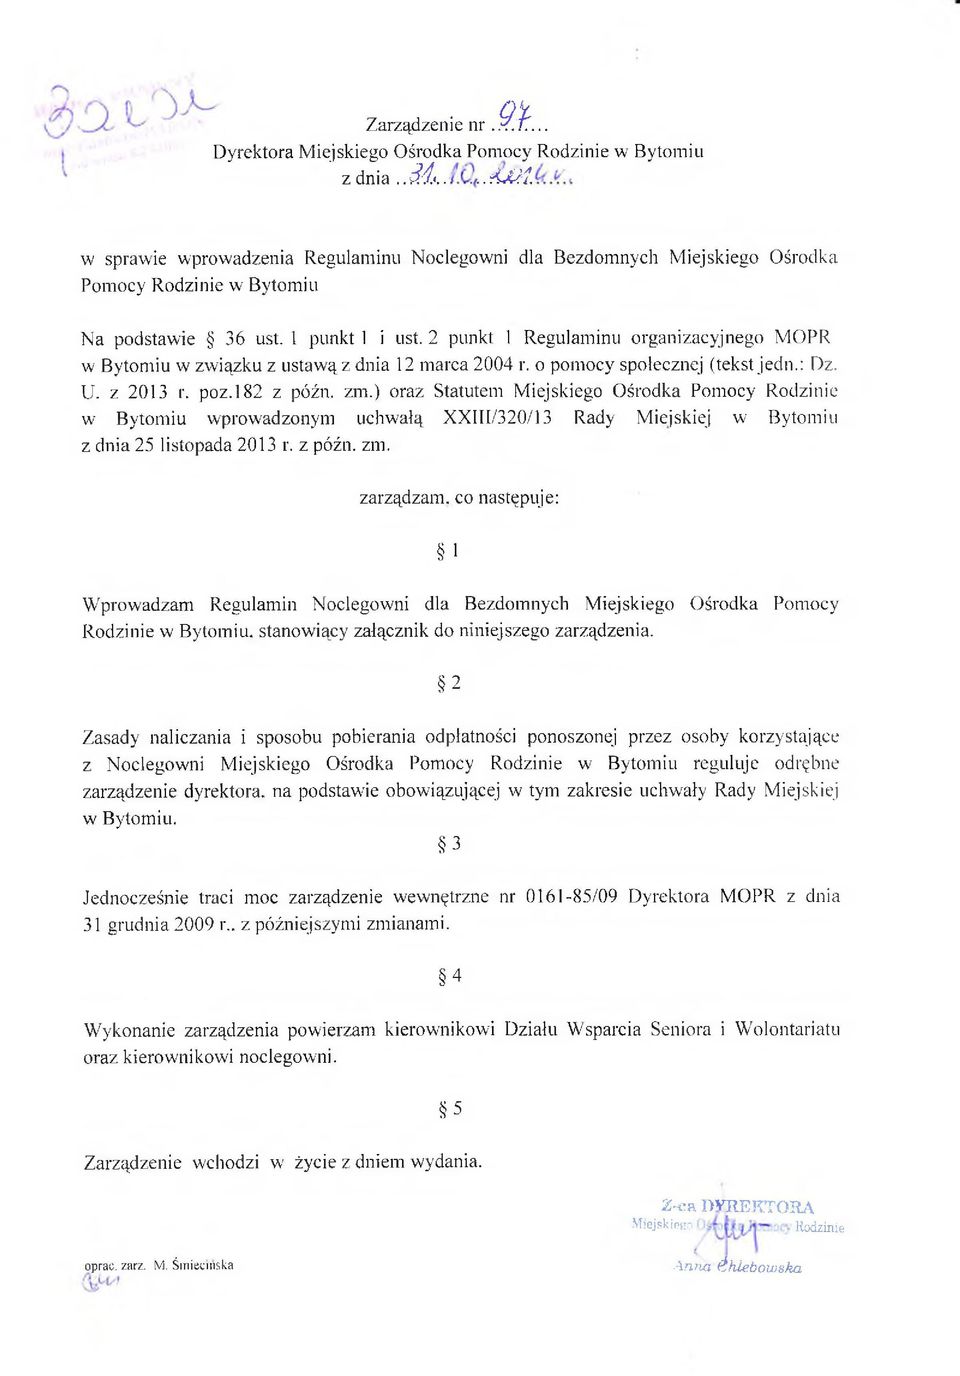 2 punkt 1 Regulaminu organizacyjnego MOPR w Bytomiu w związku z ustawą z dnia 12 marca 2004 r. o pomocy społecznej (tekst jedn.: Dz. U. z 2013 r. poz.182 z późn. zm.